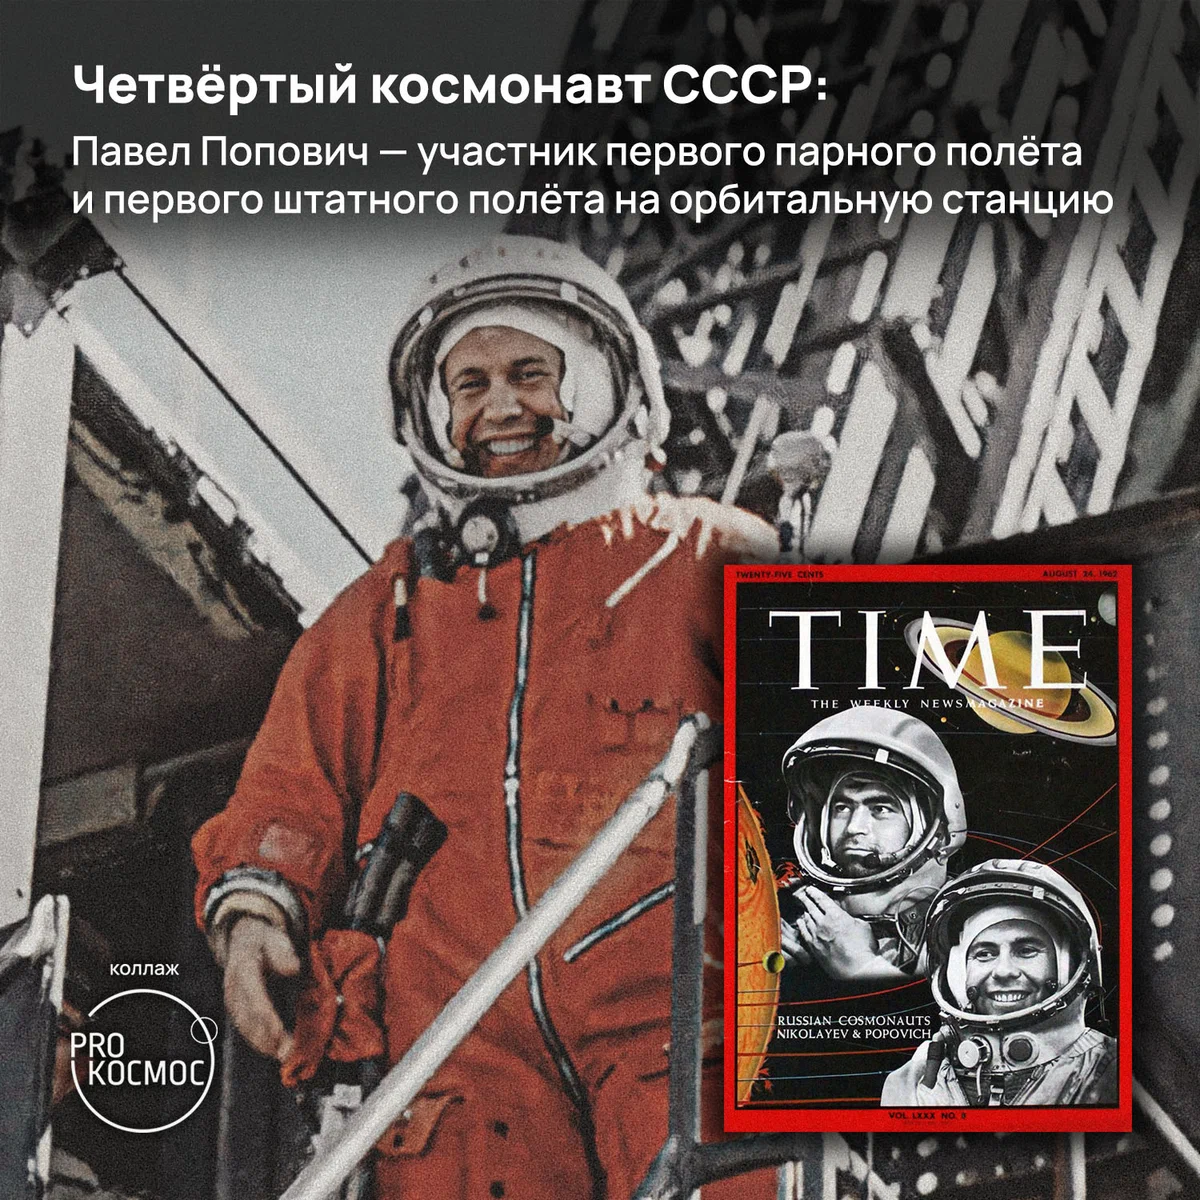 Четвёртый космонавт СССР: Павел Попович — участник первого парного полёта и первого штатного полёта на орбитальную станцию height=1200px width=1200px